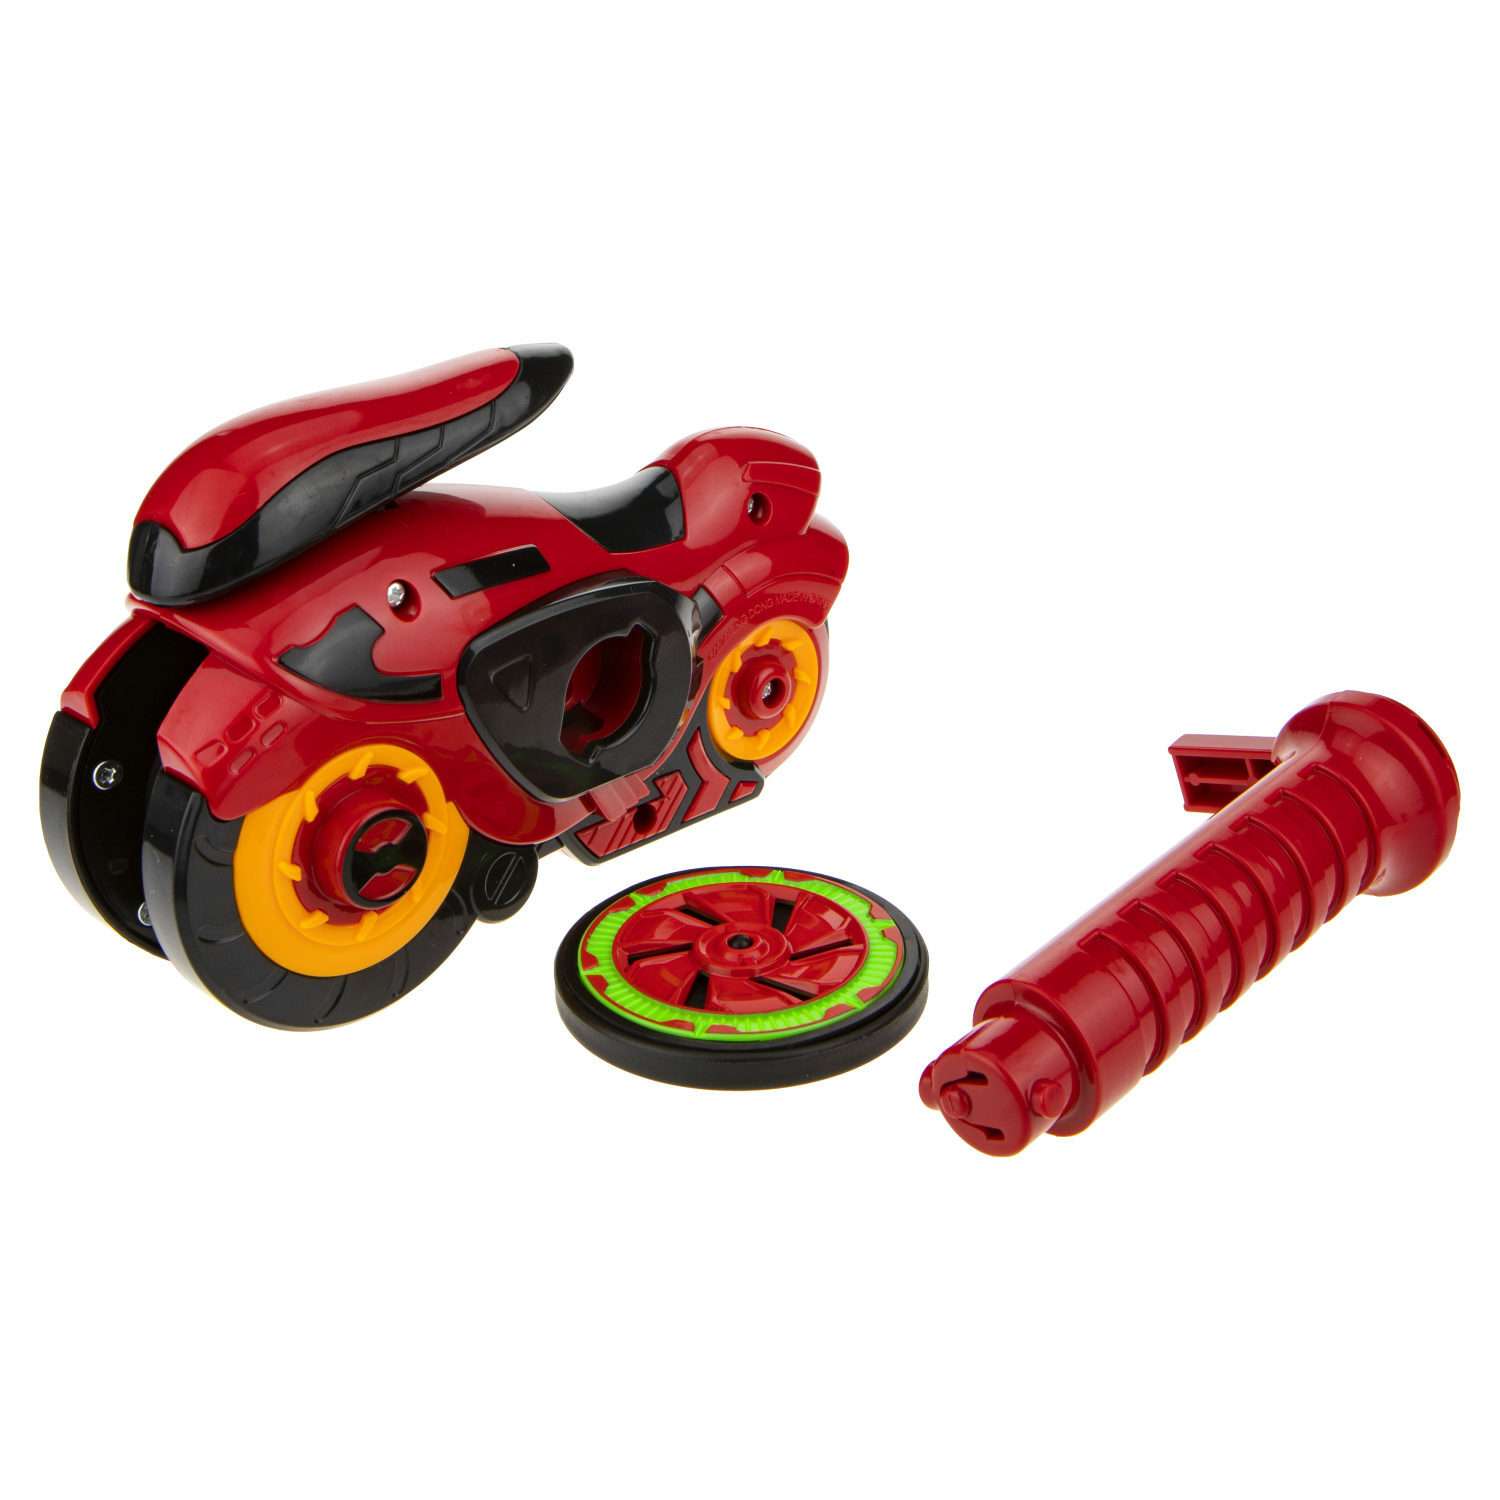 Игровой набор Hot Wheels Spin Racer Красный Мустанг игрушечный мотоцикл с колесом-гироскопом Т19372 - фото 3